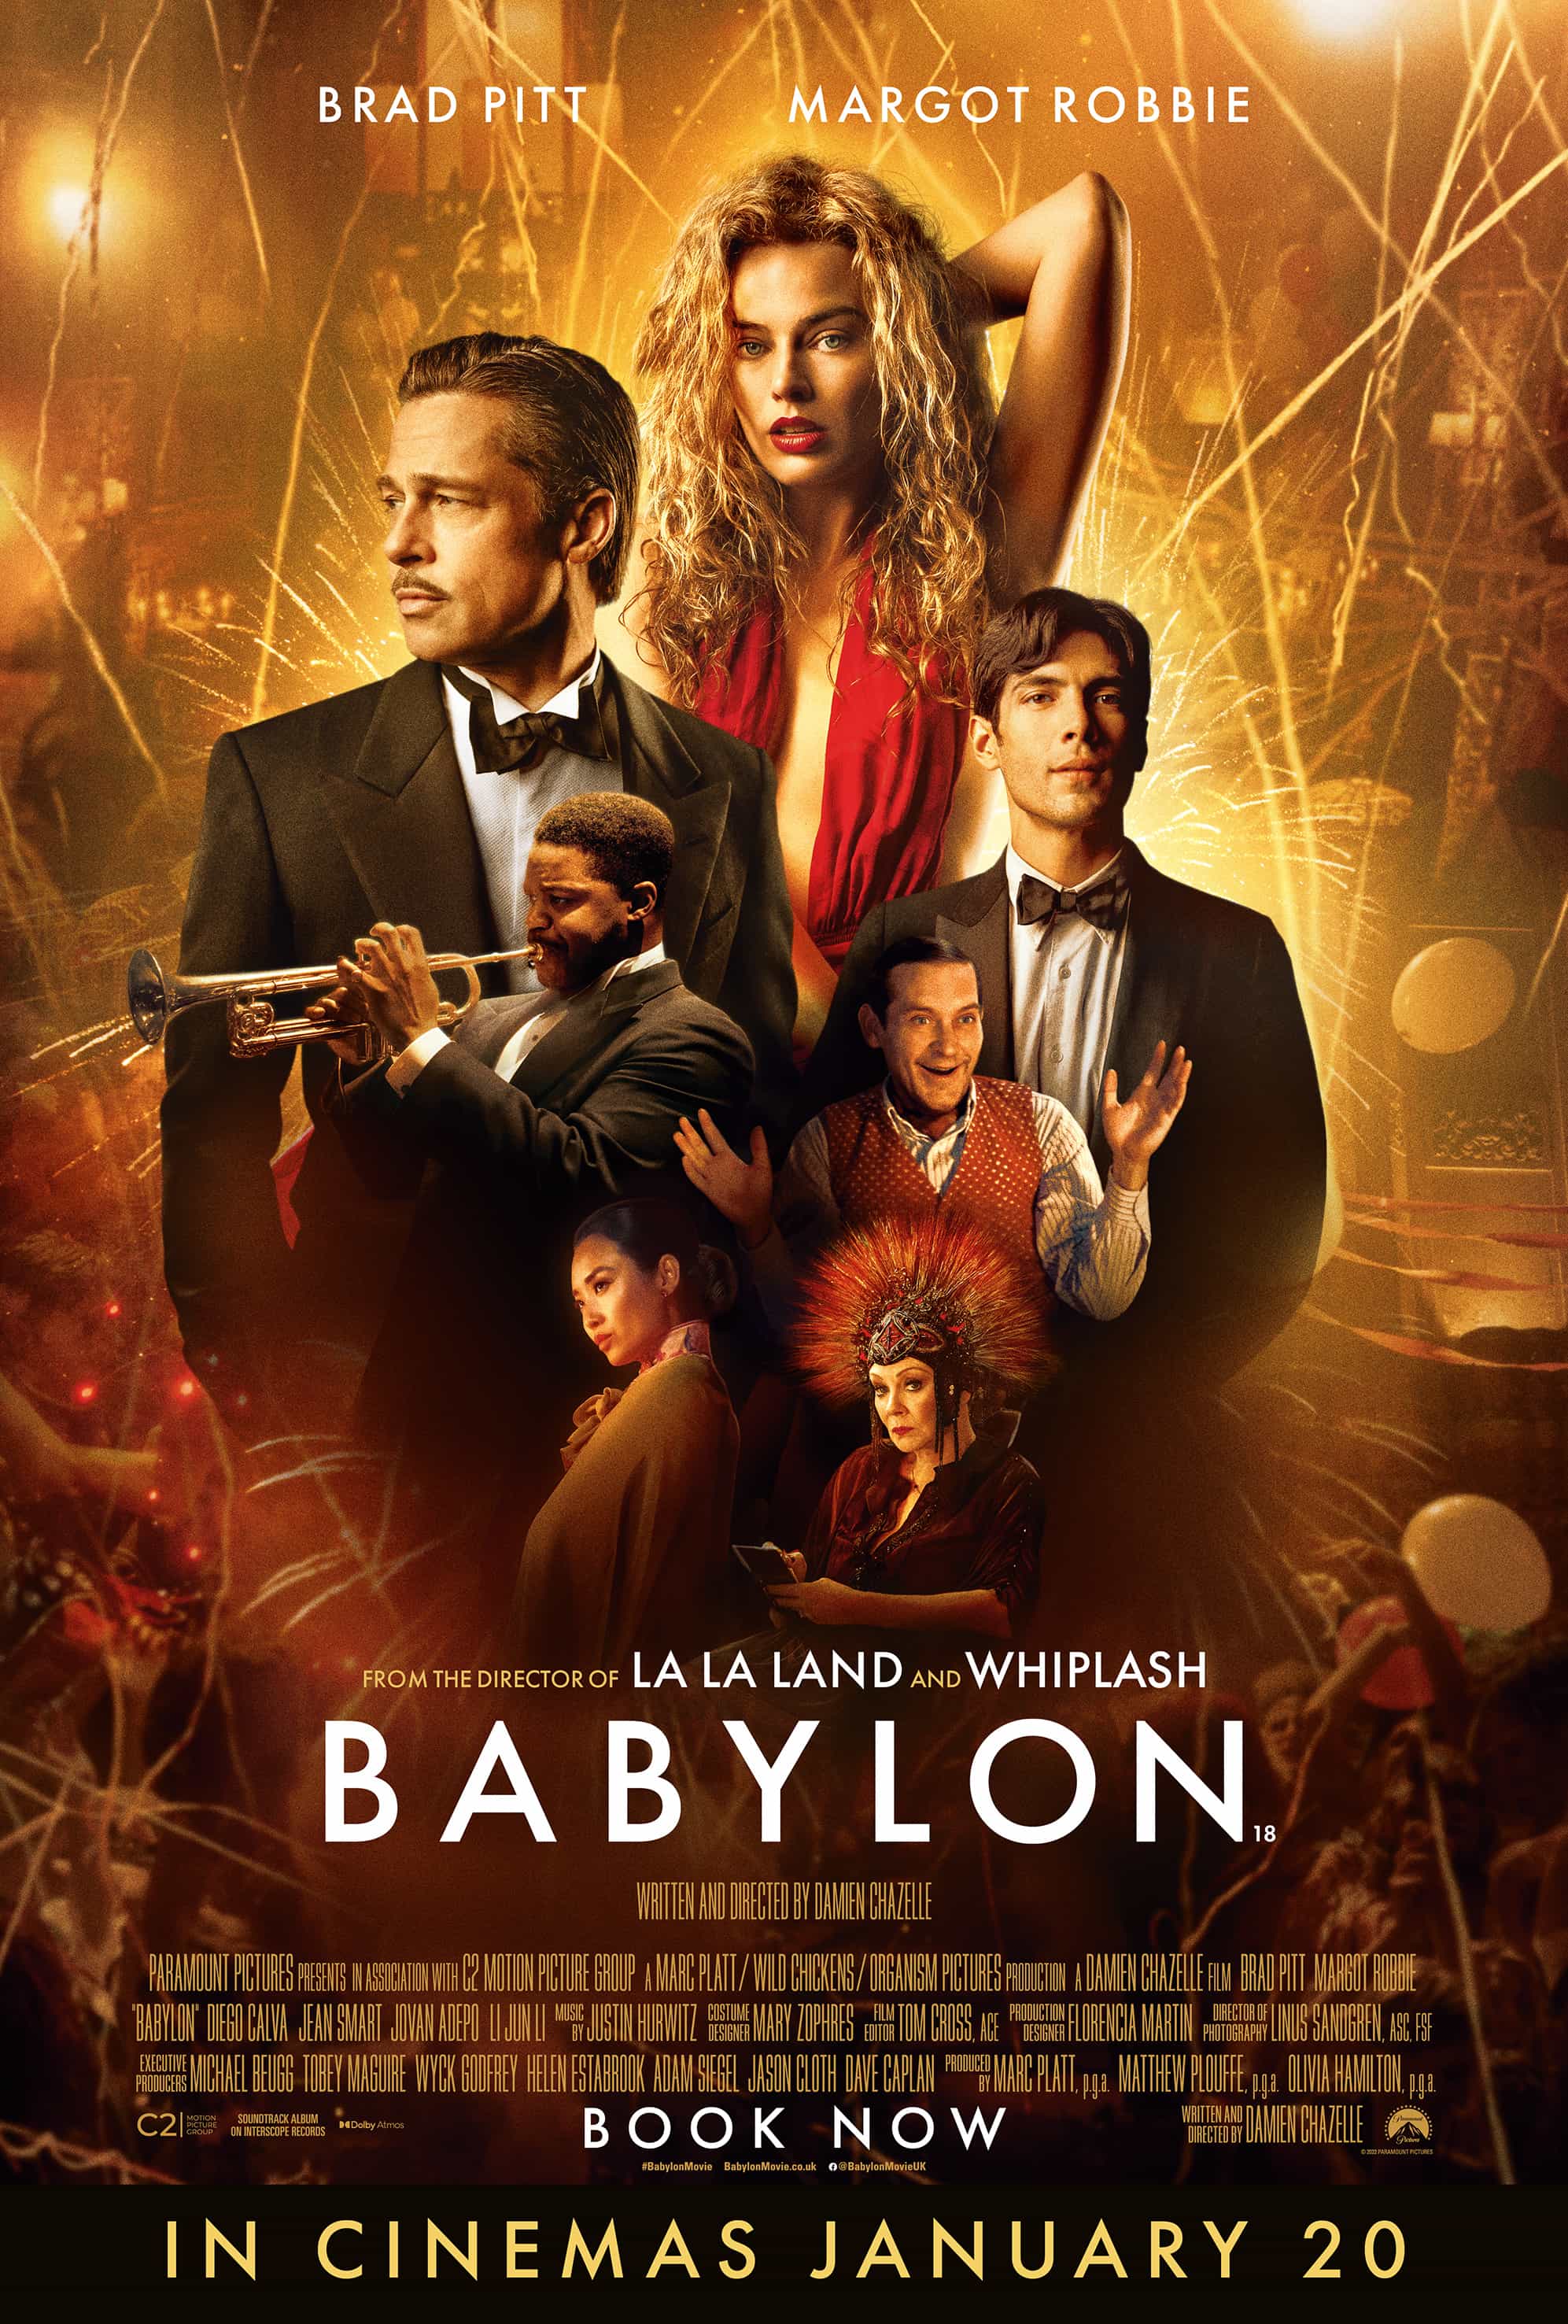 First trailer for Babylon starring Brad Pitt and Margot Robbie - UK release date 6th January 2023 #babylon